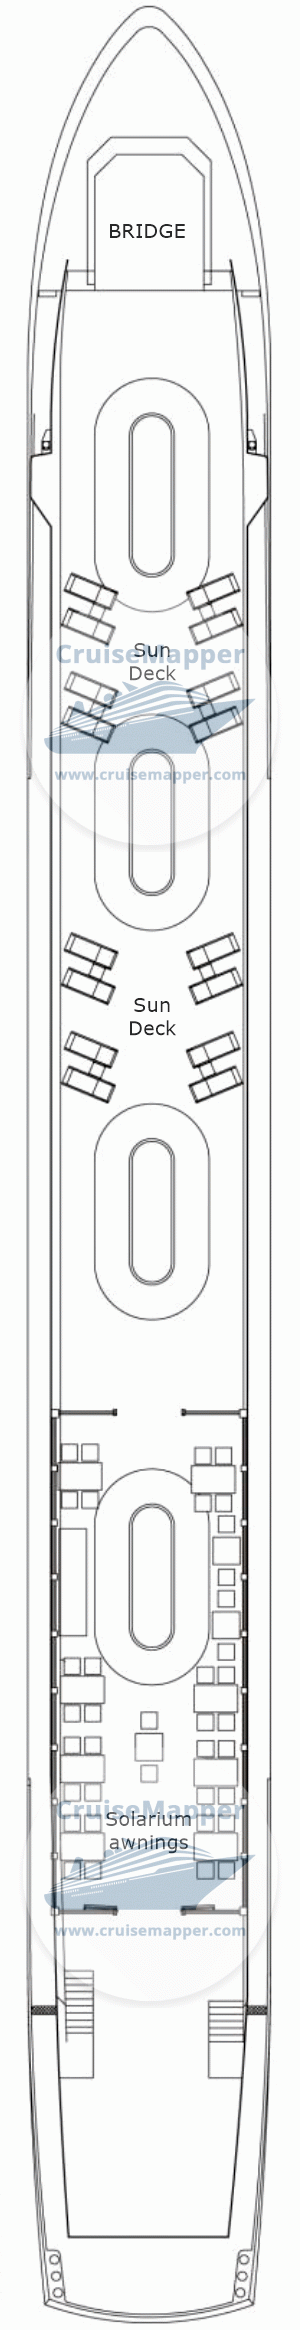 Spirit of Chartwell barge Deck 03 - Sundeck